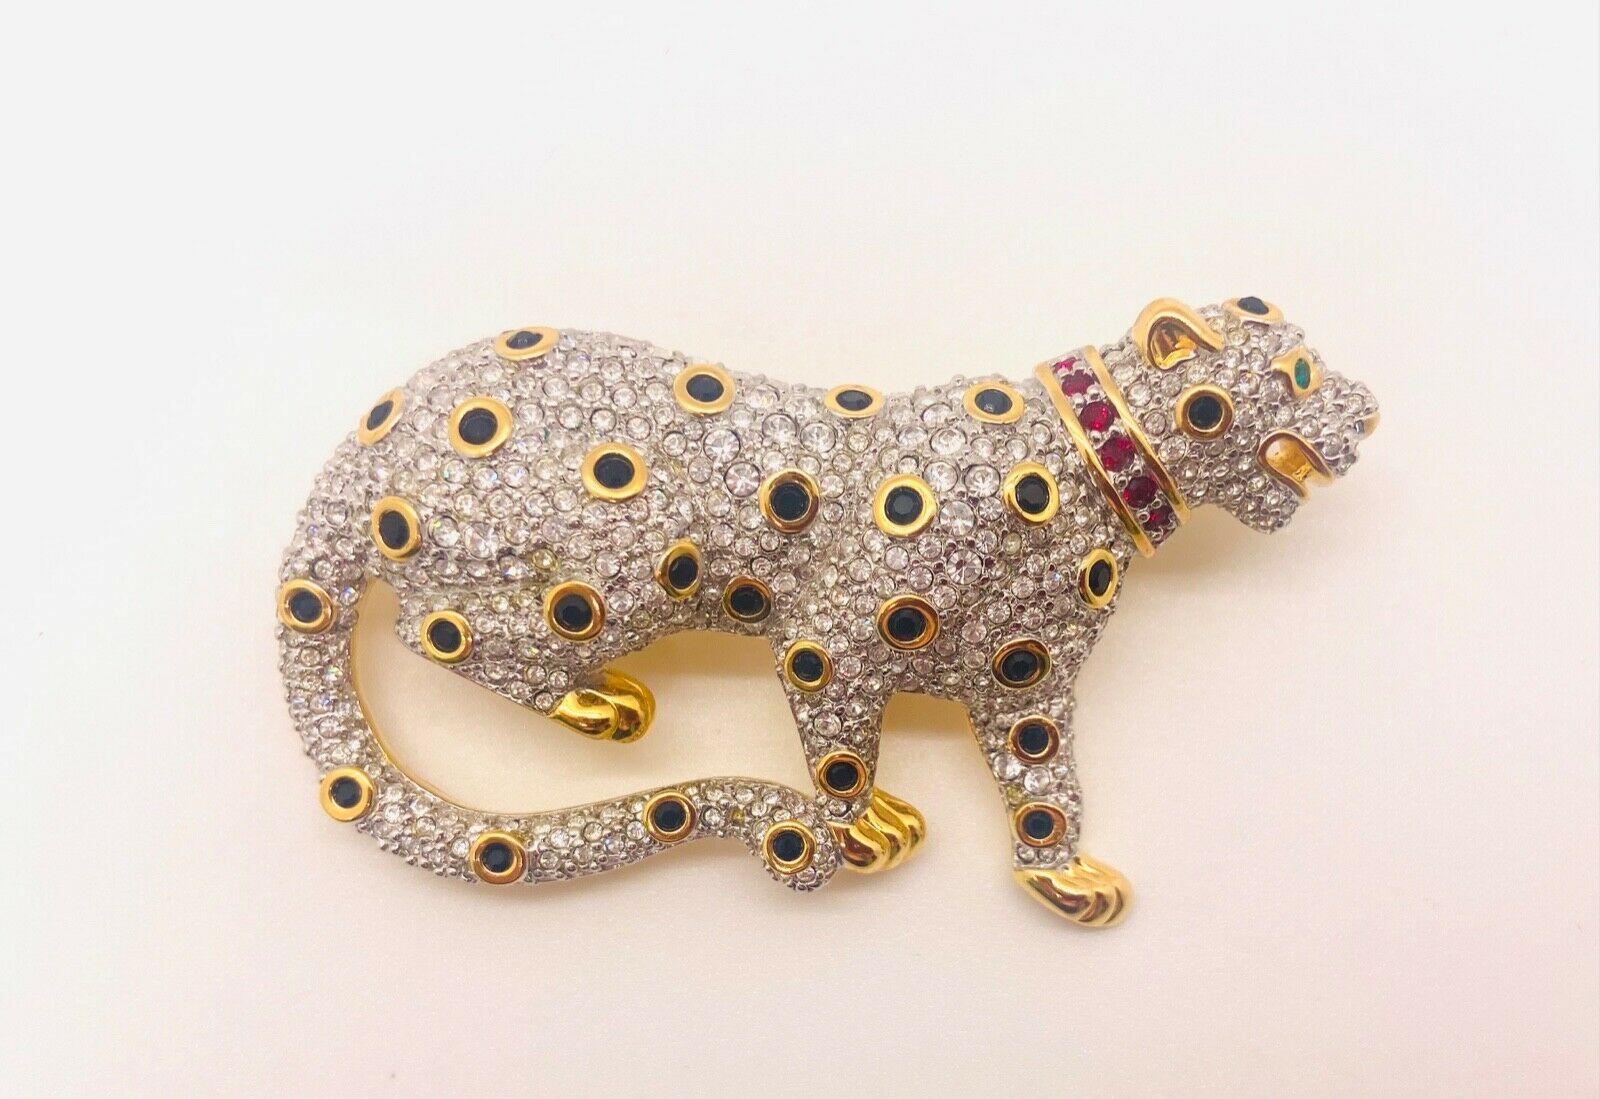 Broche ou épingle en forme de léopard en cristal pave de Swarovski. Cette magnifique broche est gravée du logo Swarovski à l'arrière et est plaquée or. Elle est ornée de cristaux clairs en pavé, accentués de cristaux verts et rouges sur l'ensemble